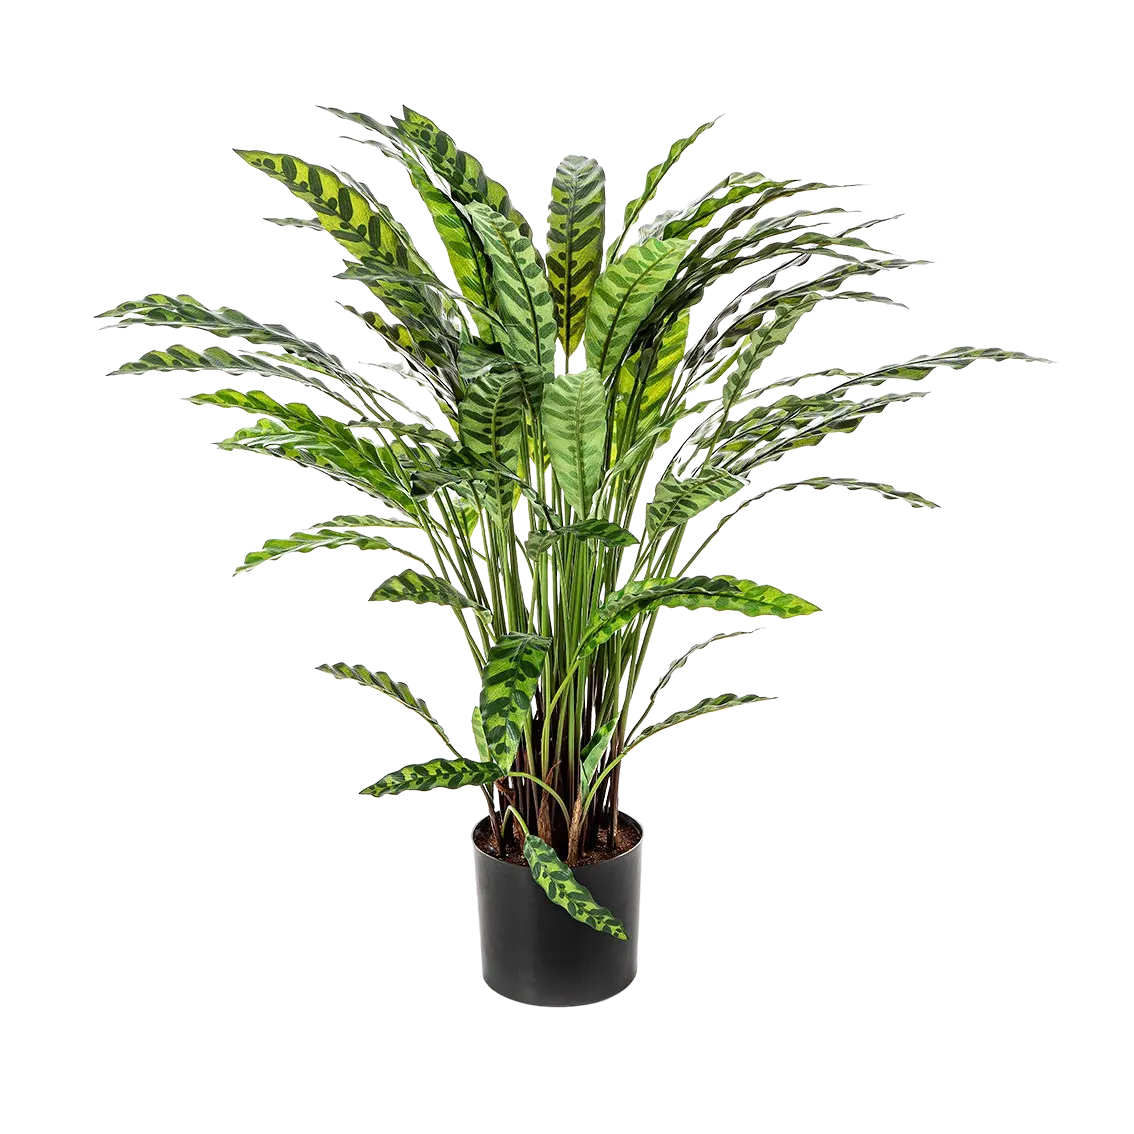 Künstliche Calatheas - Jane auf transparentem Hintergrund mit echt wirkenden Kunstblättern. Diese Kunstpflanze gehört zur Gattung/Familie der "Calatheas" bzw. "Kunst-Calatheas".